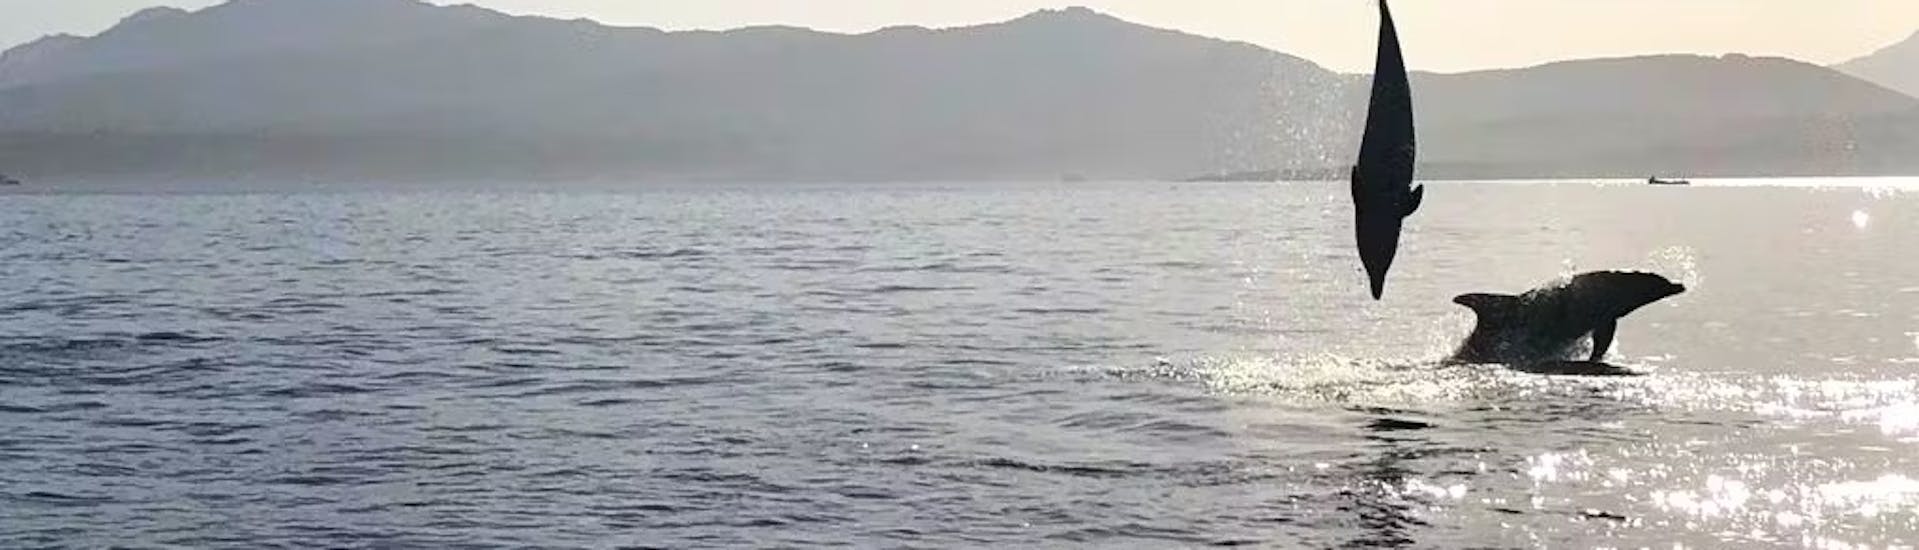 Einige Delfine springen im Wasser während der RIB-Bootstour im Golfo Aranci mit Delfinbeobachtung und geführtem Schnorcheln.